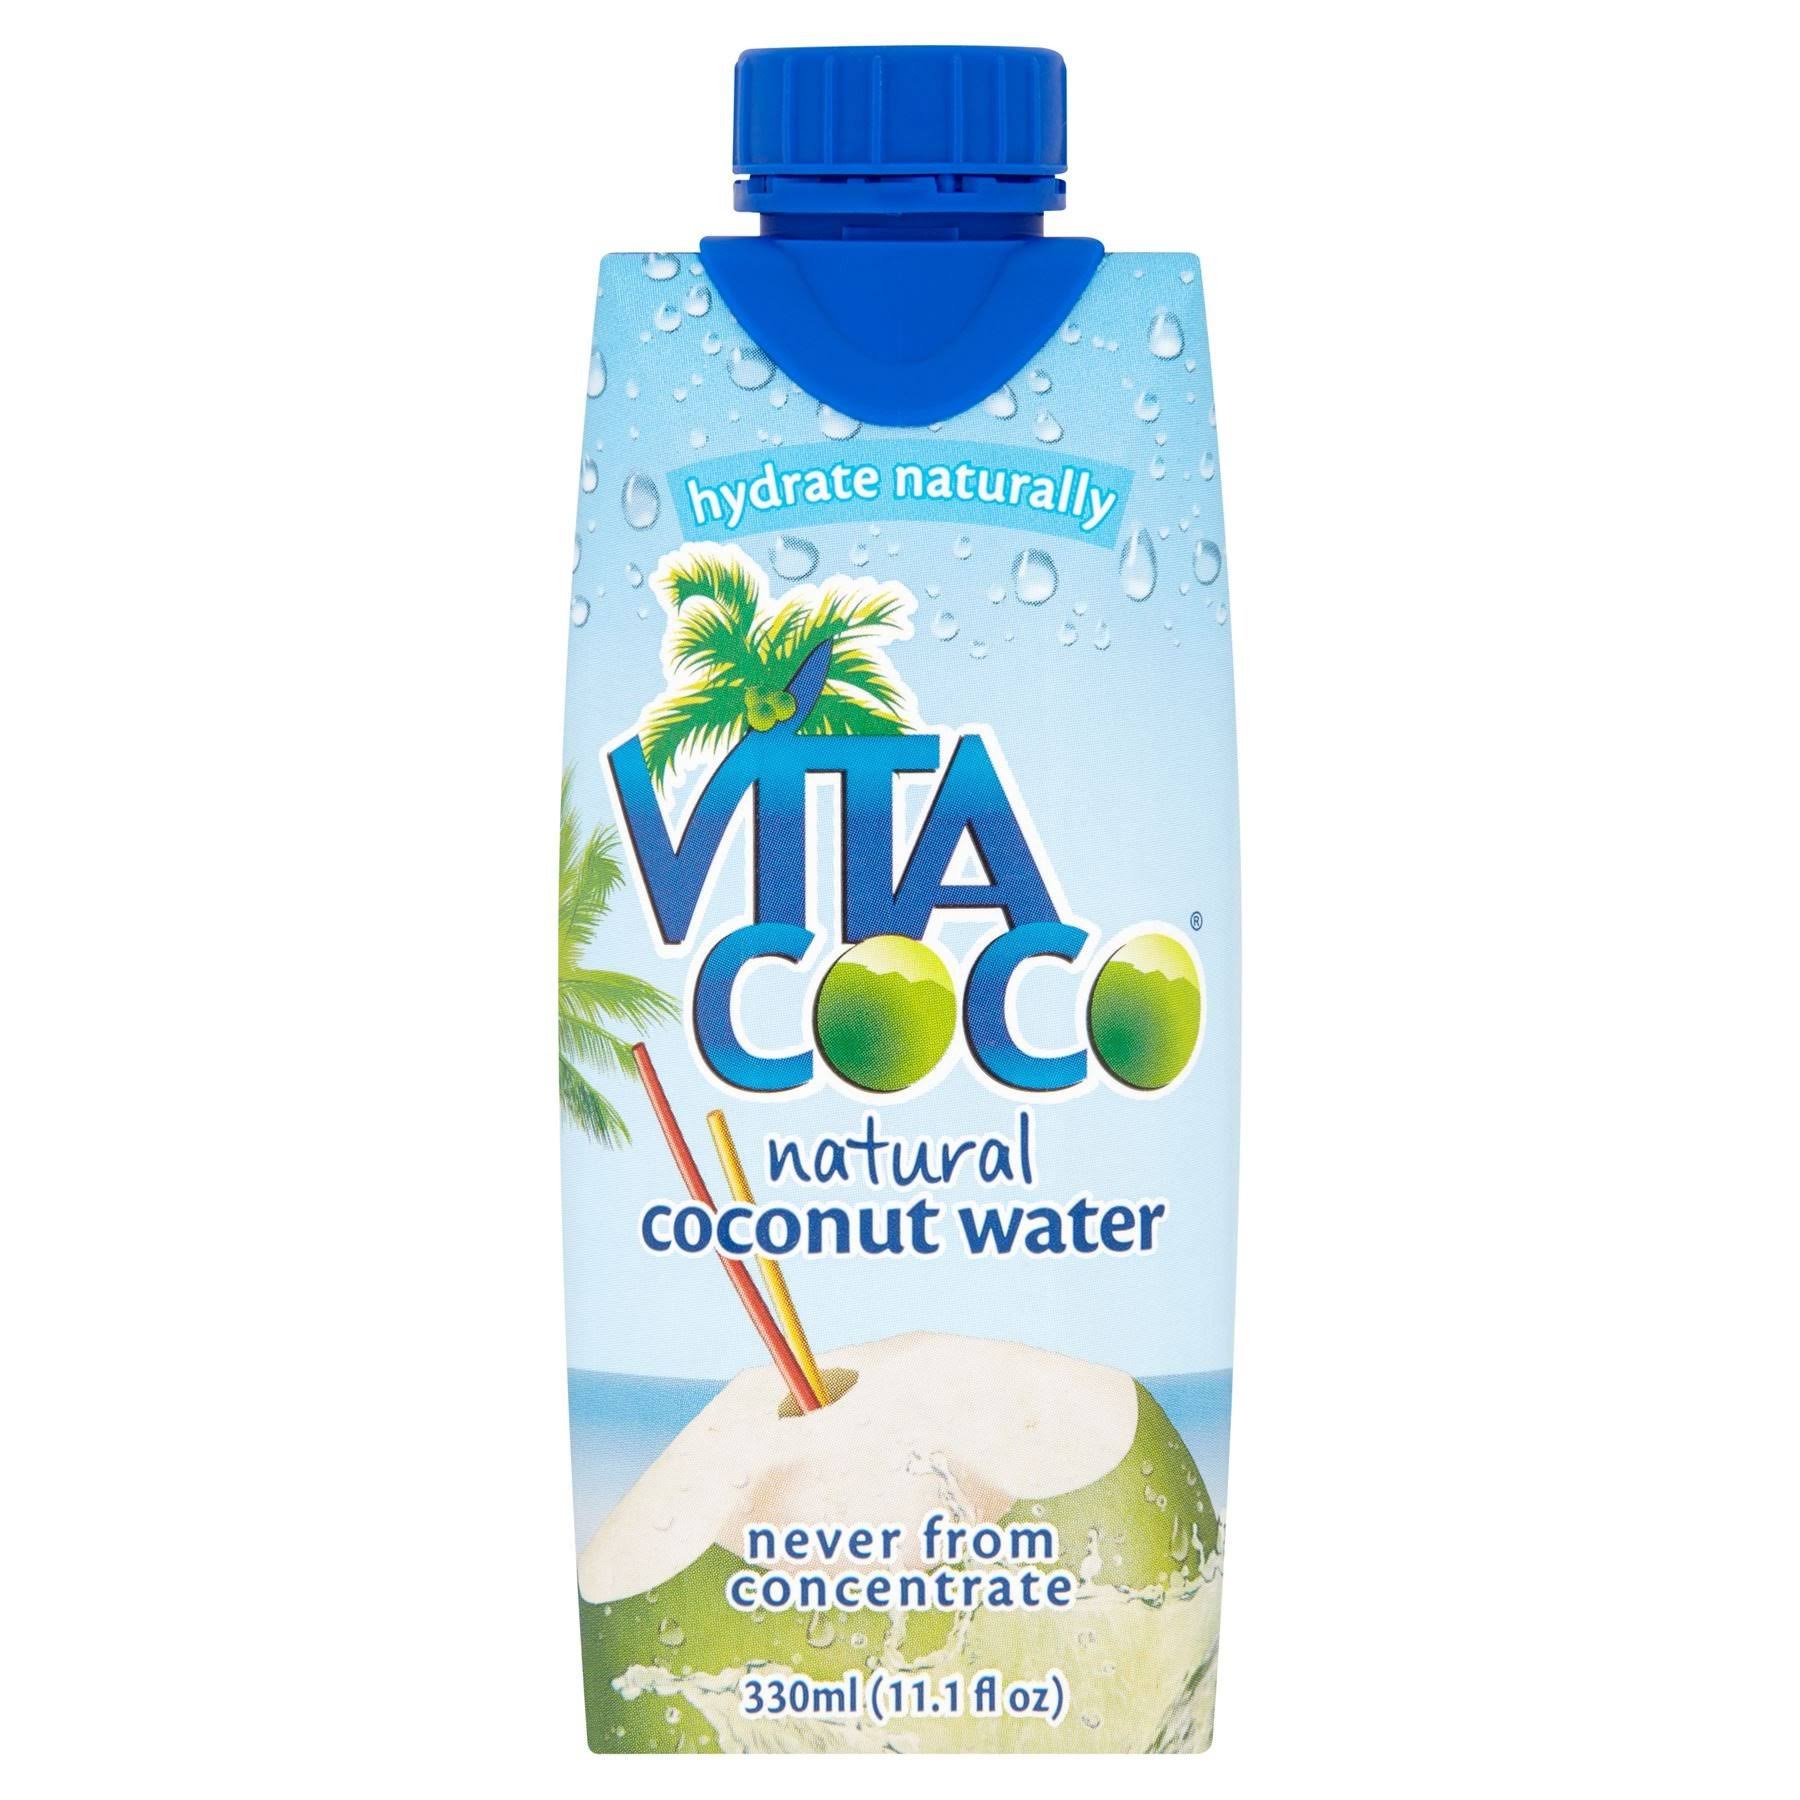 Vita Coco Pure Coconut Water - 330ml